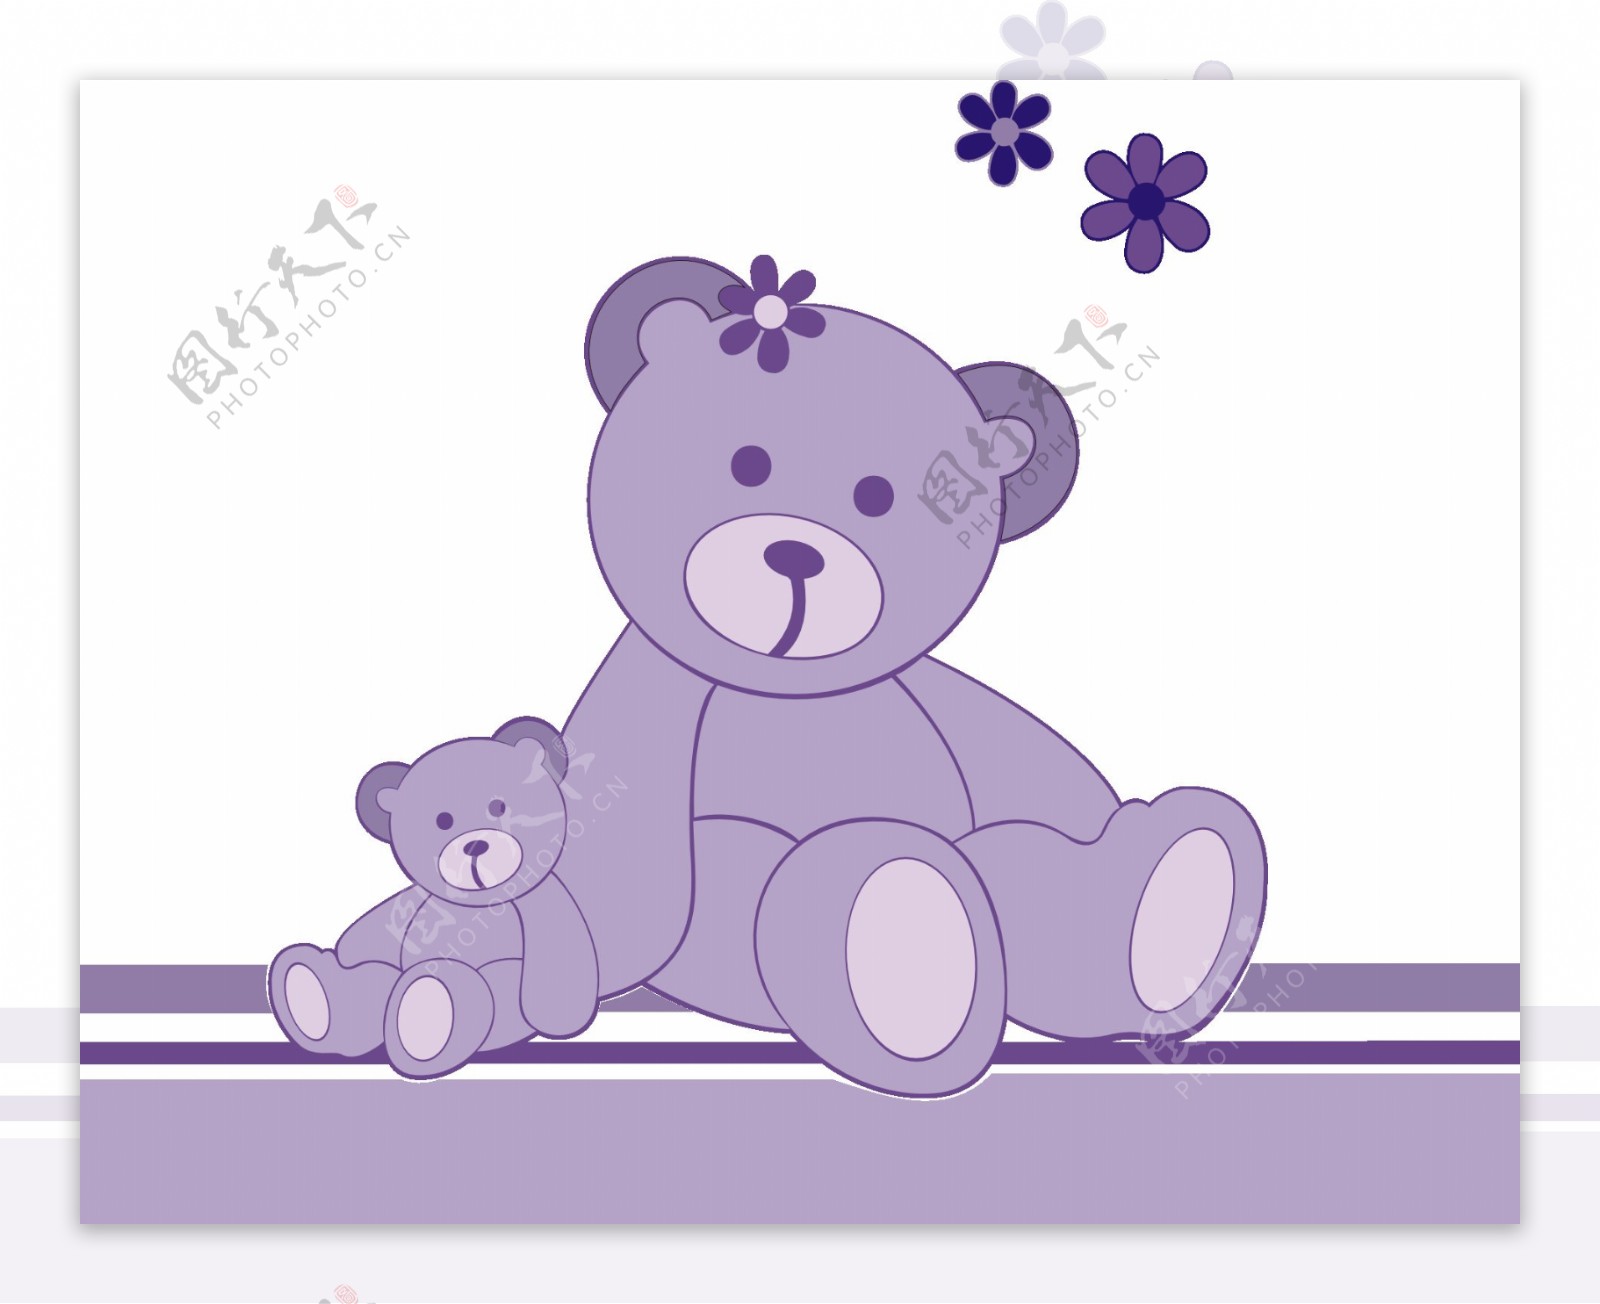 紫色玩具熊